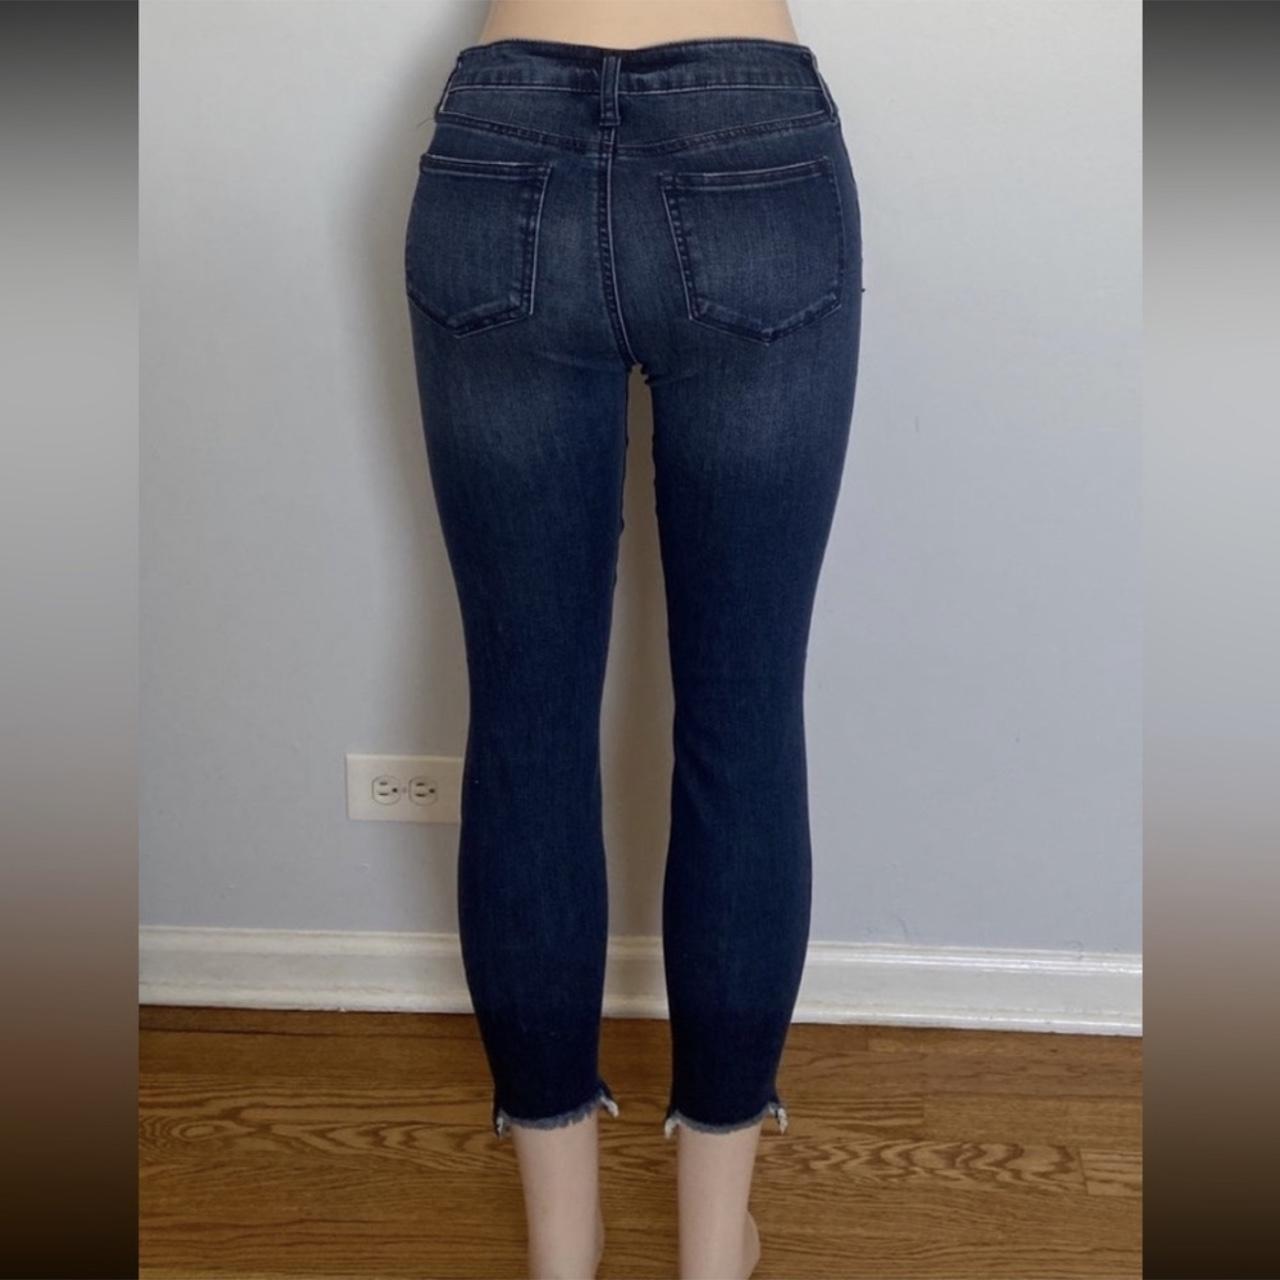 fashion nova jeans size 5 